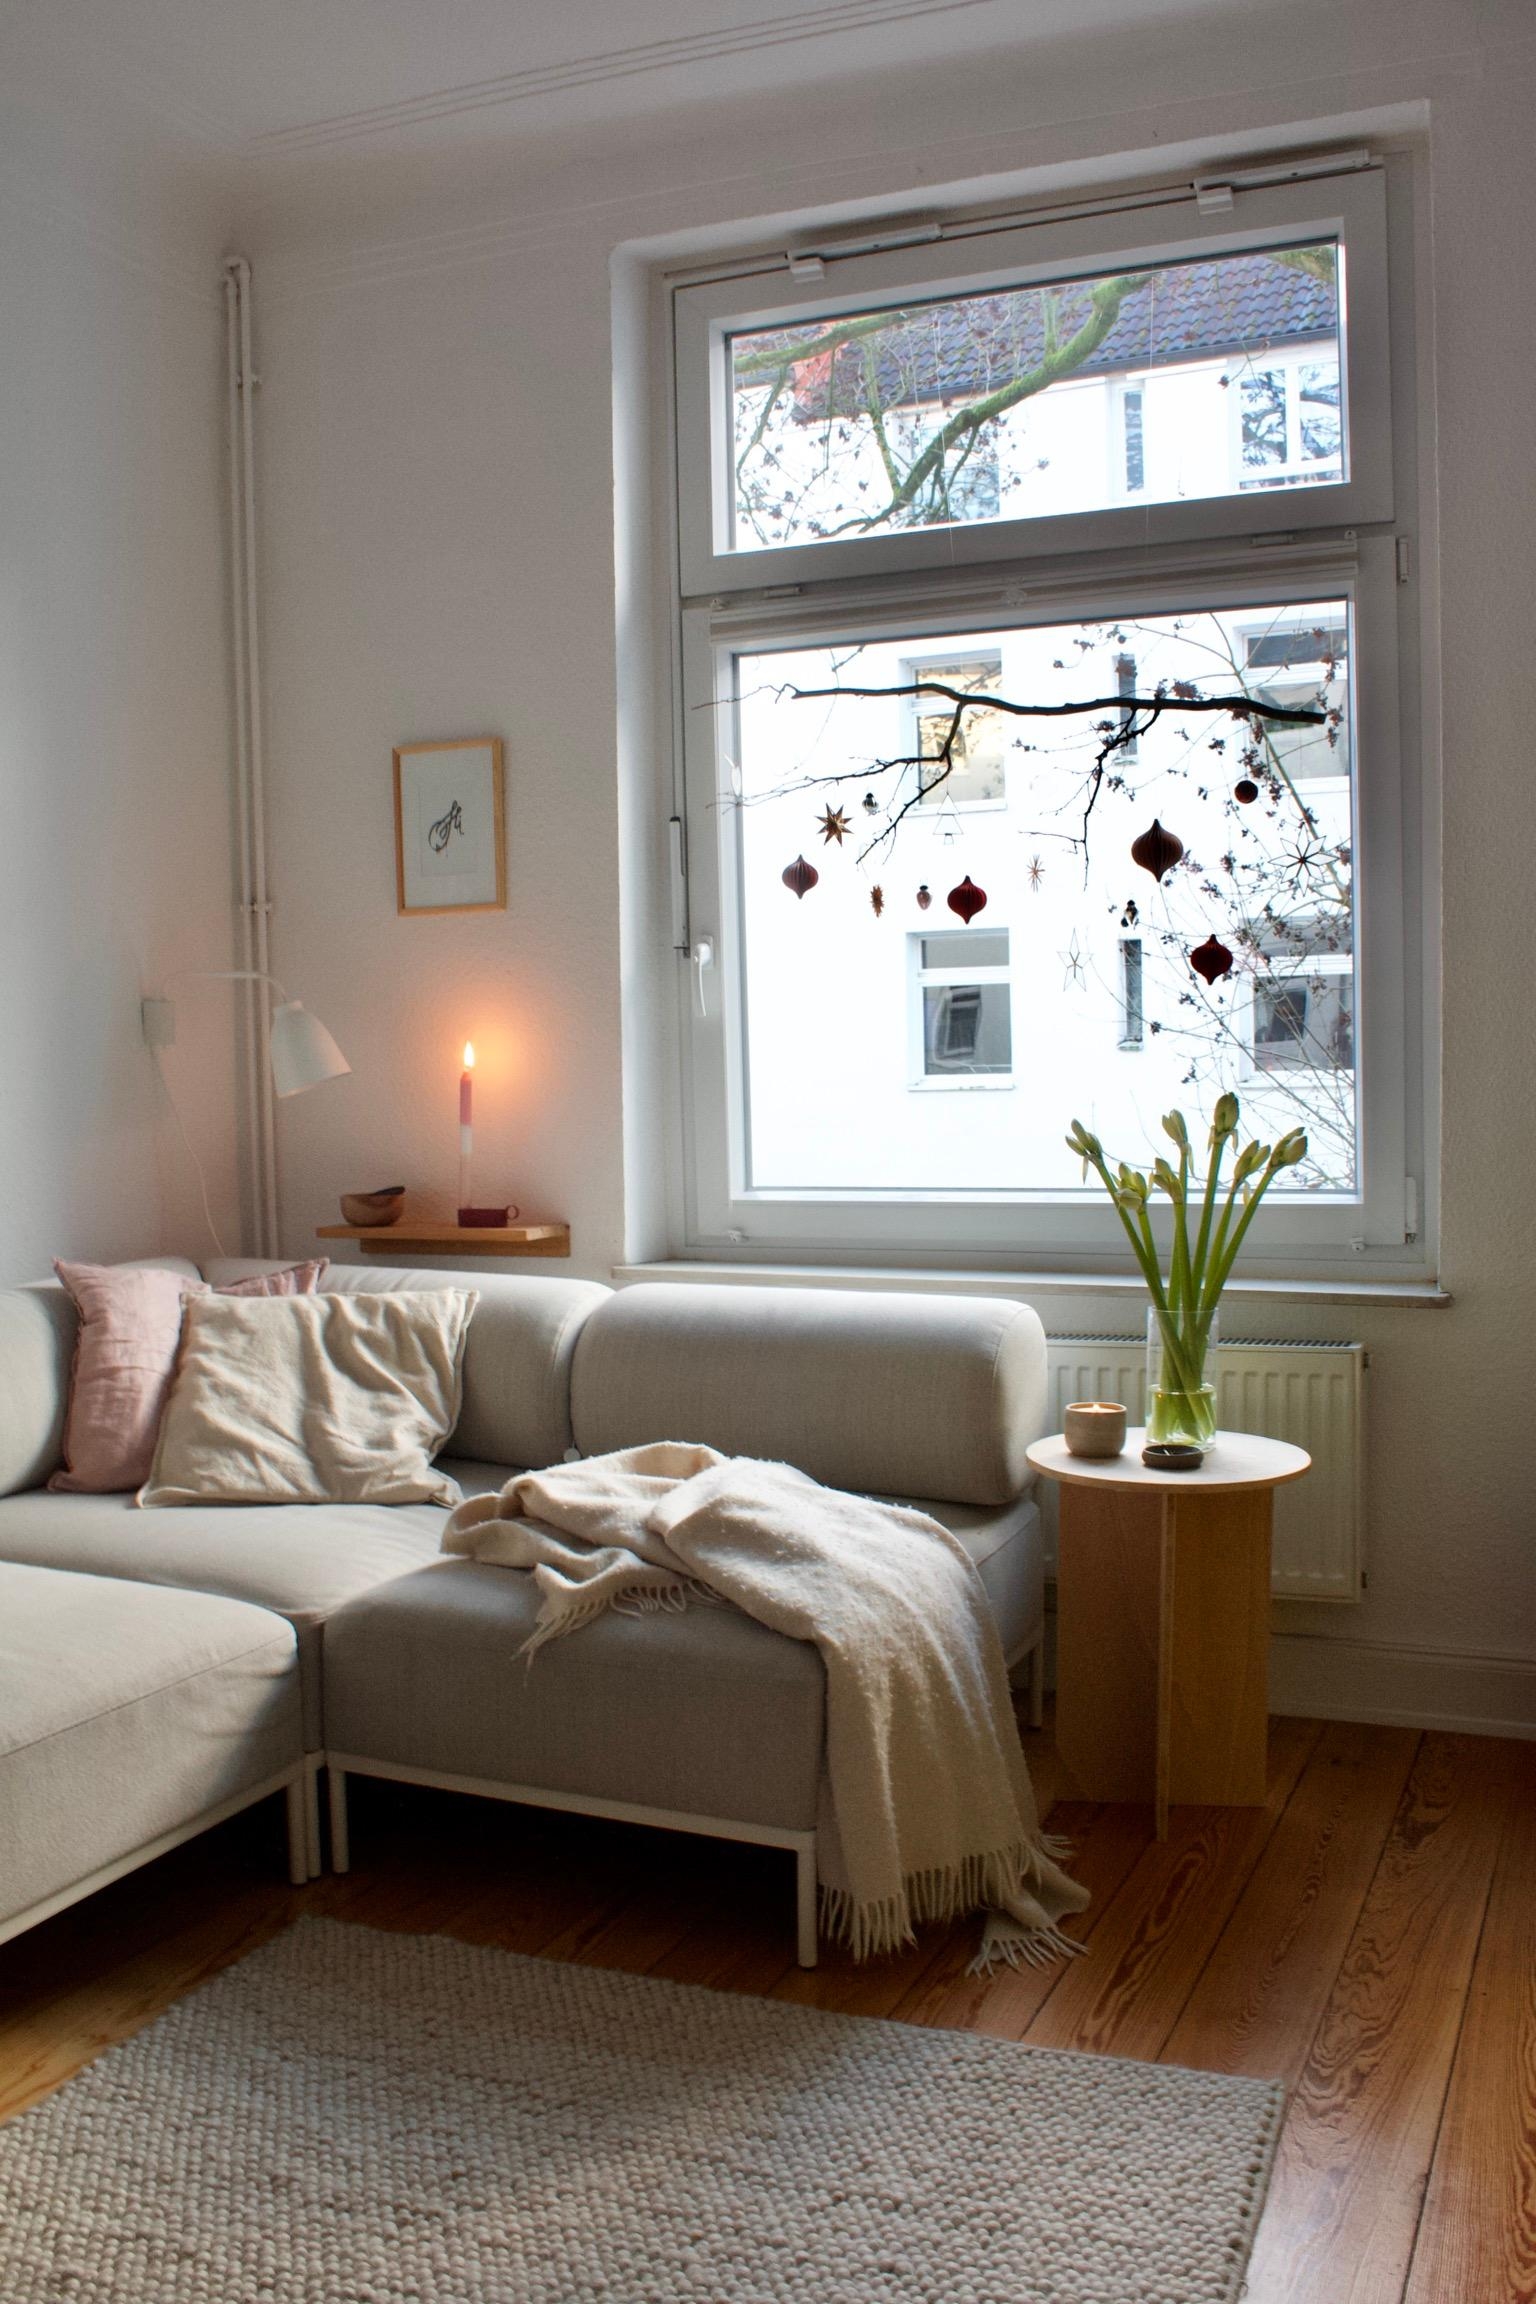 #wohnzimmer #couch #4.Advent #altbau #teppich #beistelltisch #hygge